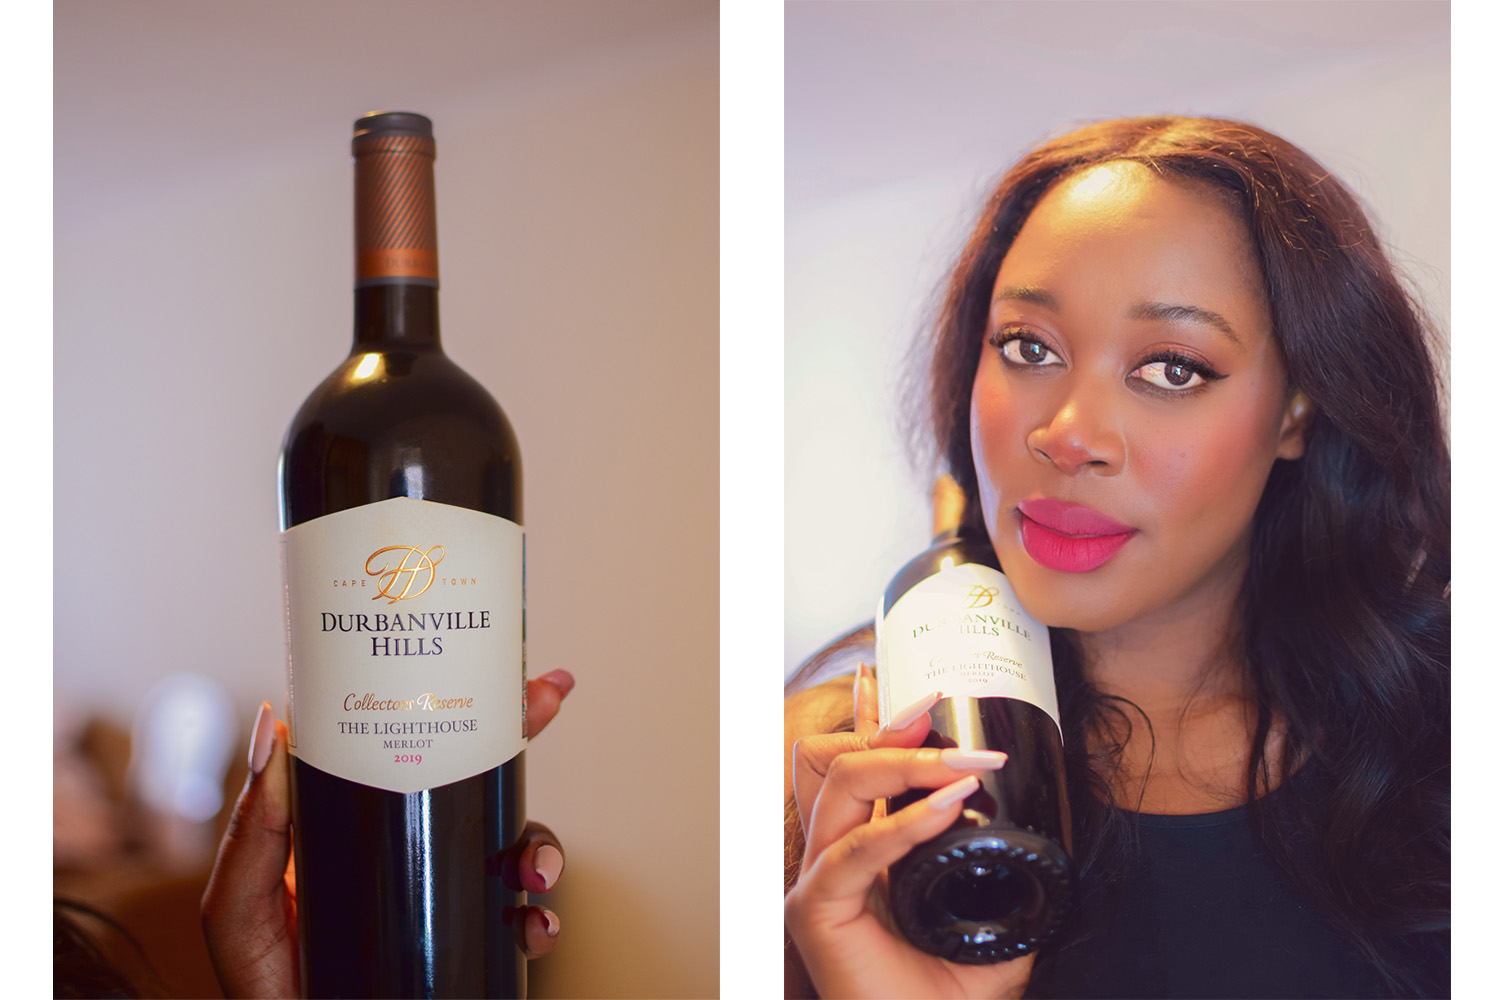 DurbanVille hills wine